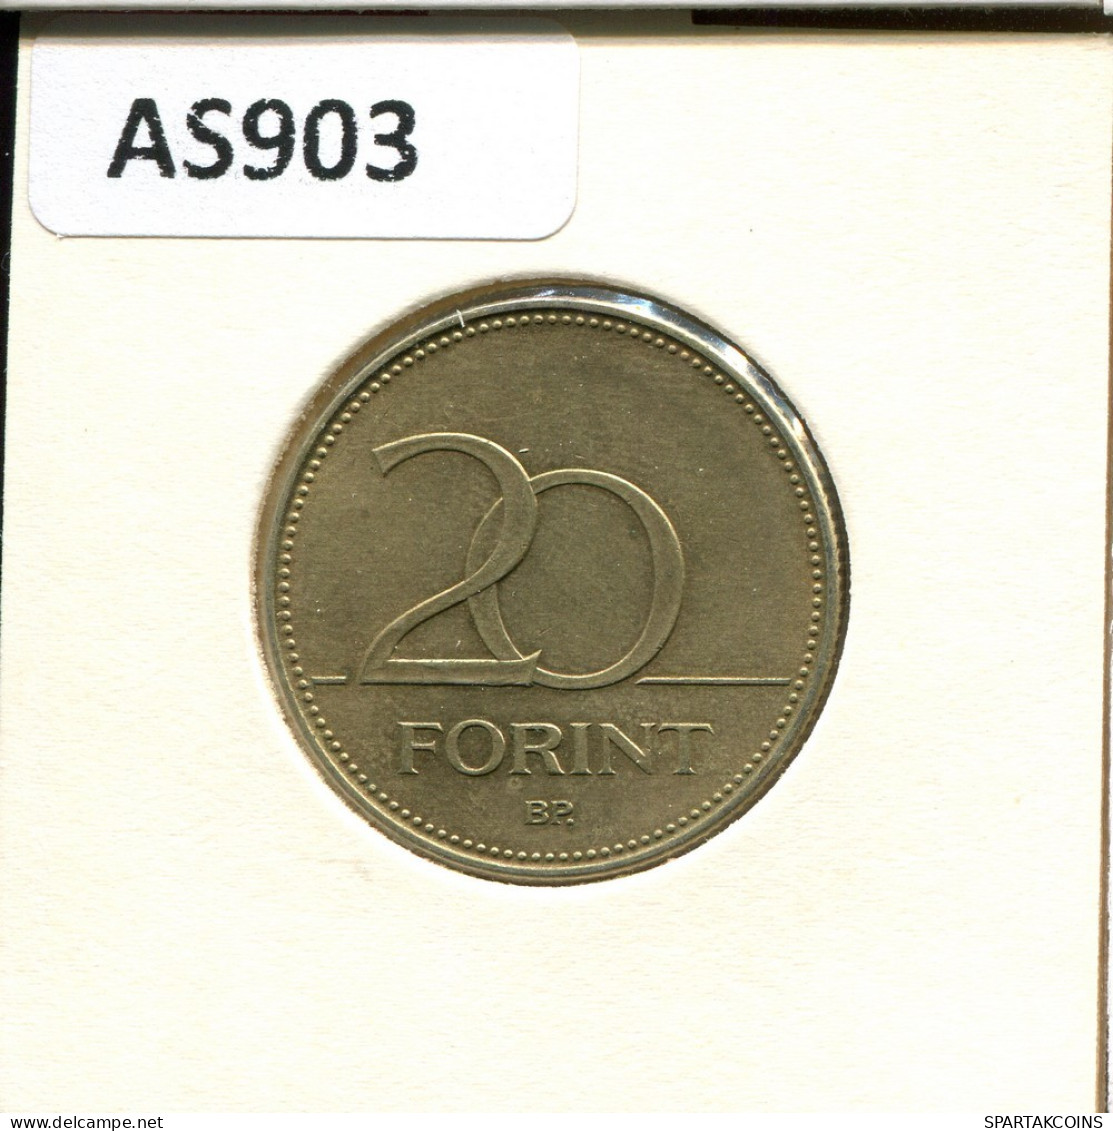 20 FORINT 1993 HUNGRÍA HUNGARY Moneda #AS903.E.A - Hungría